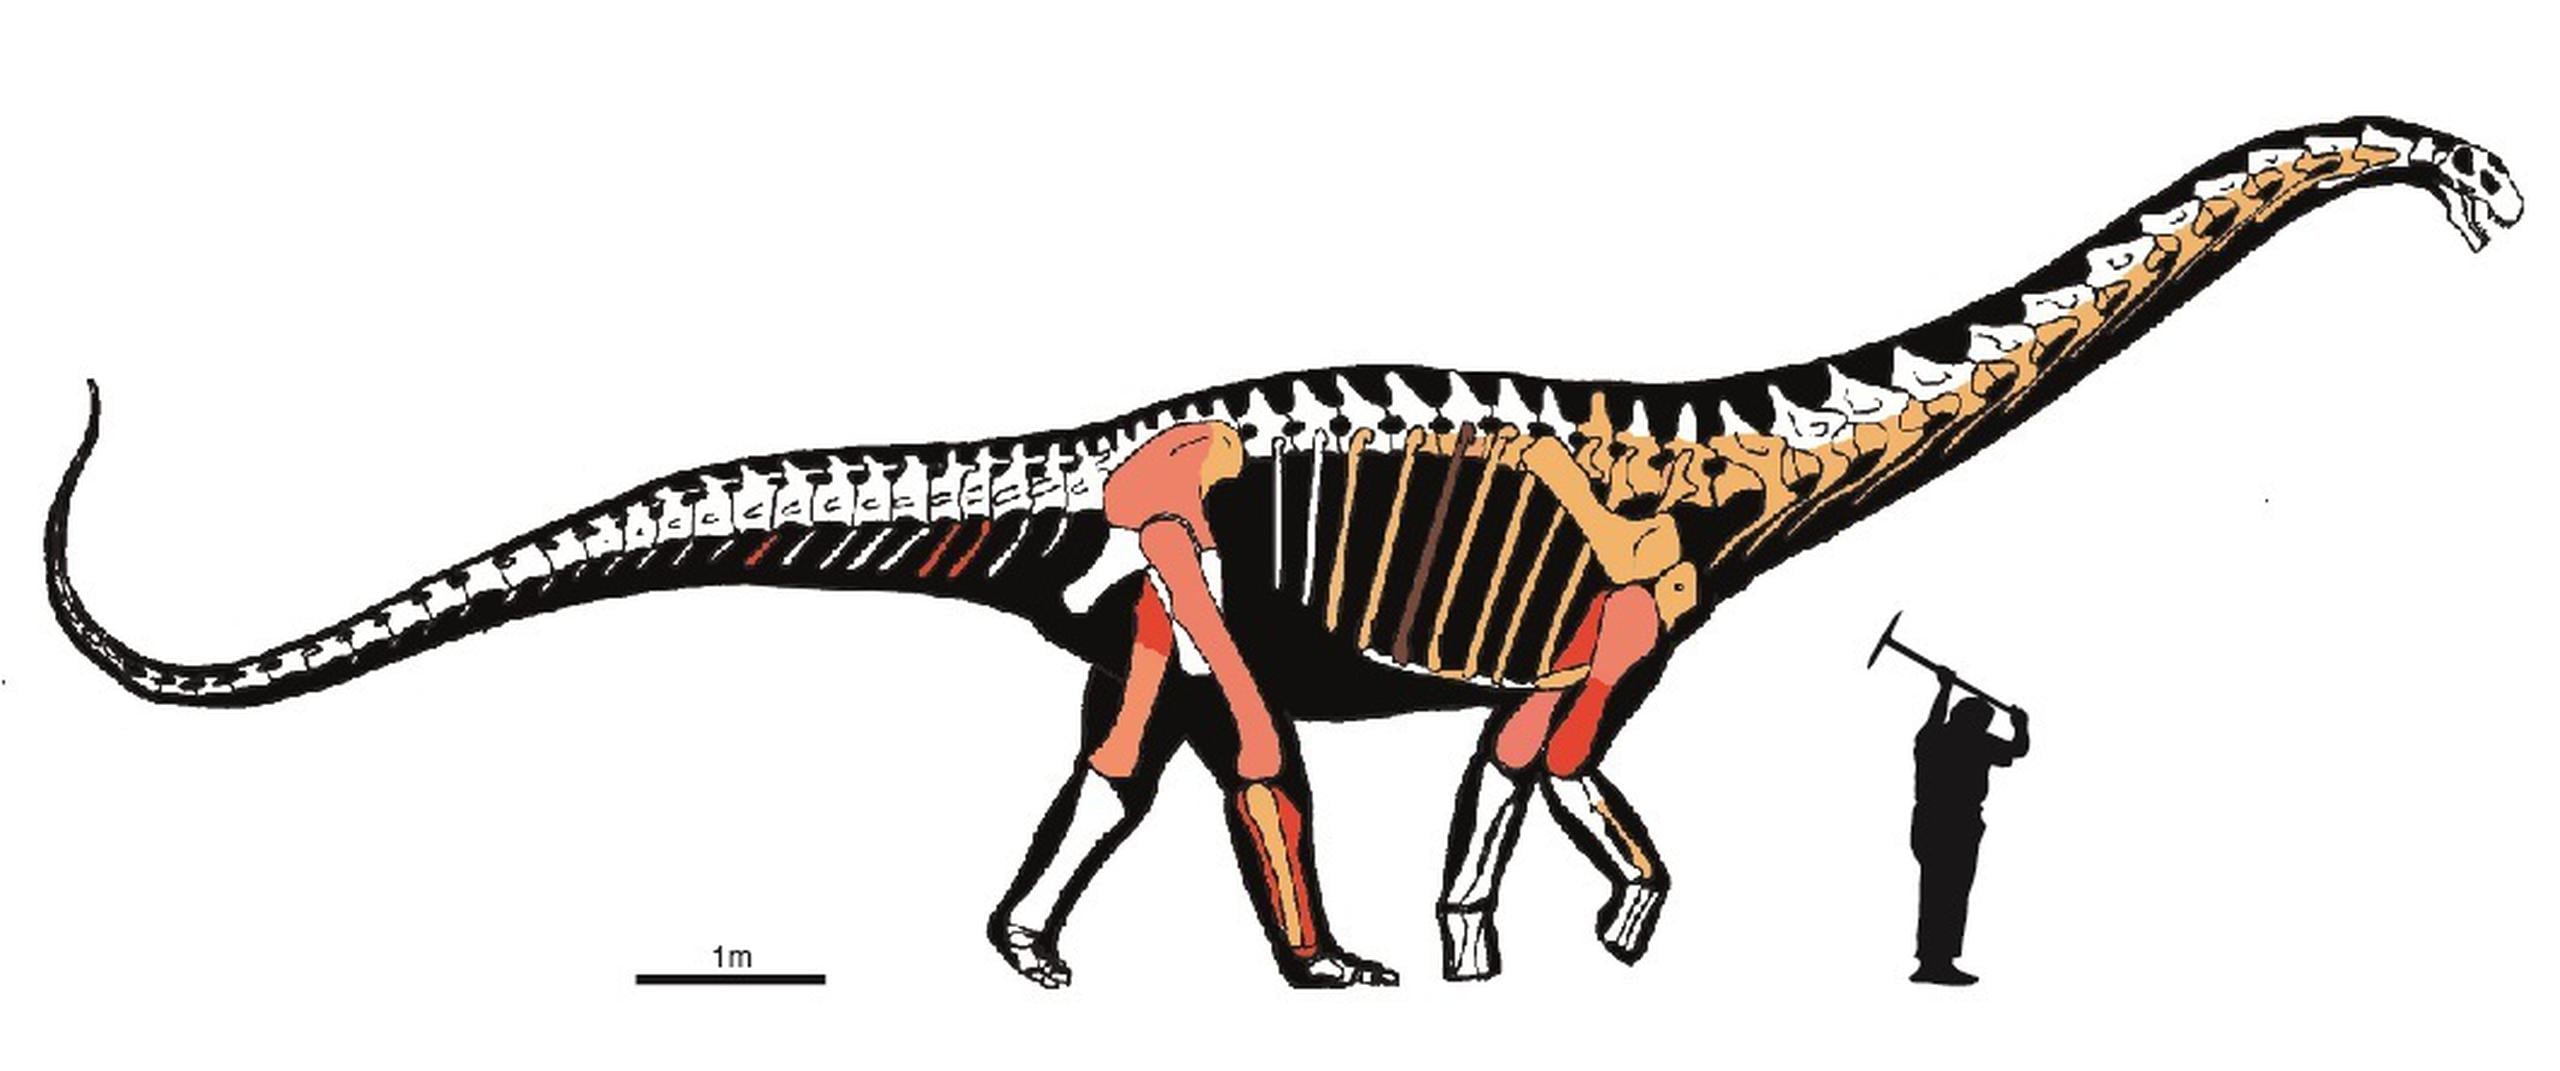 Reproducción del dinosaurio titanosaurio Abditosaurus kuehnei cedida por el Institut Català de Paleontologia. EFE/Foto cedida
